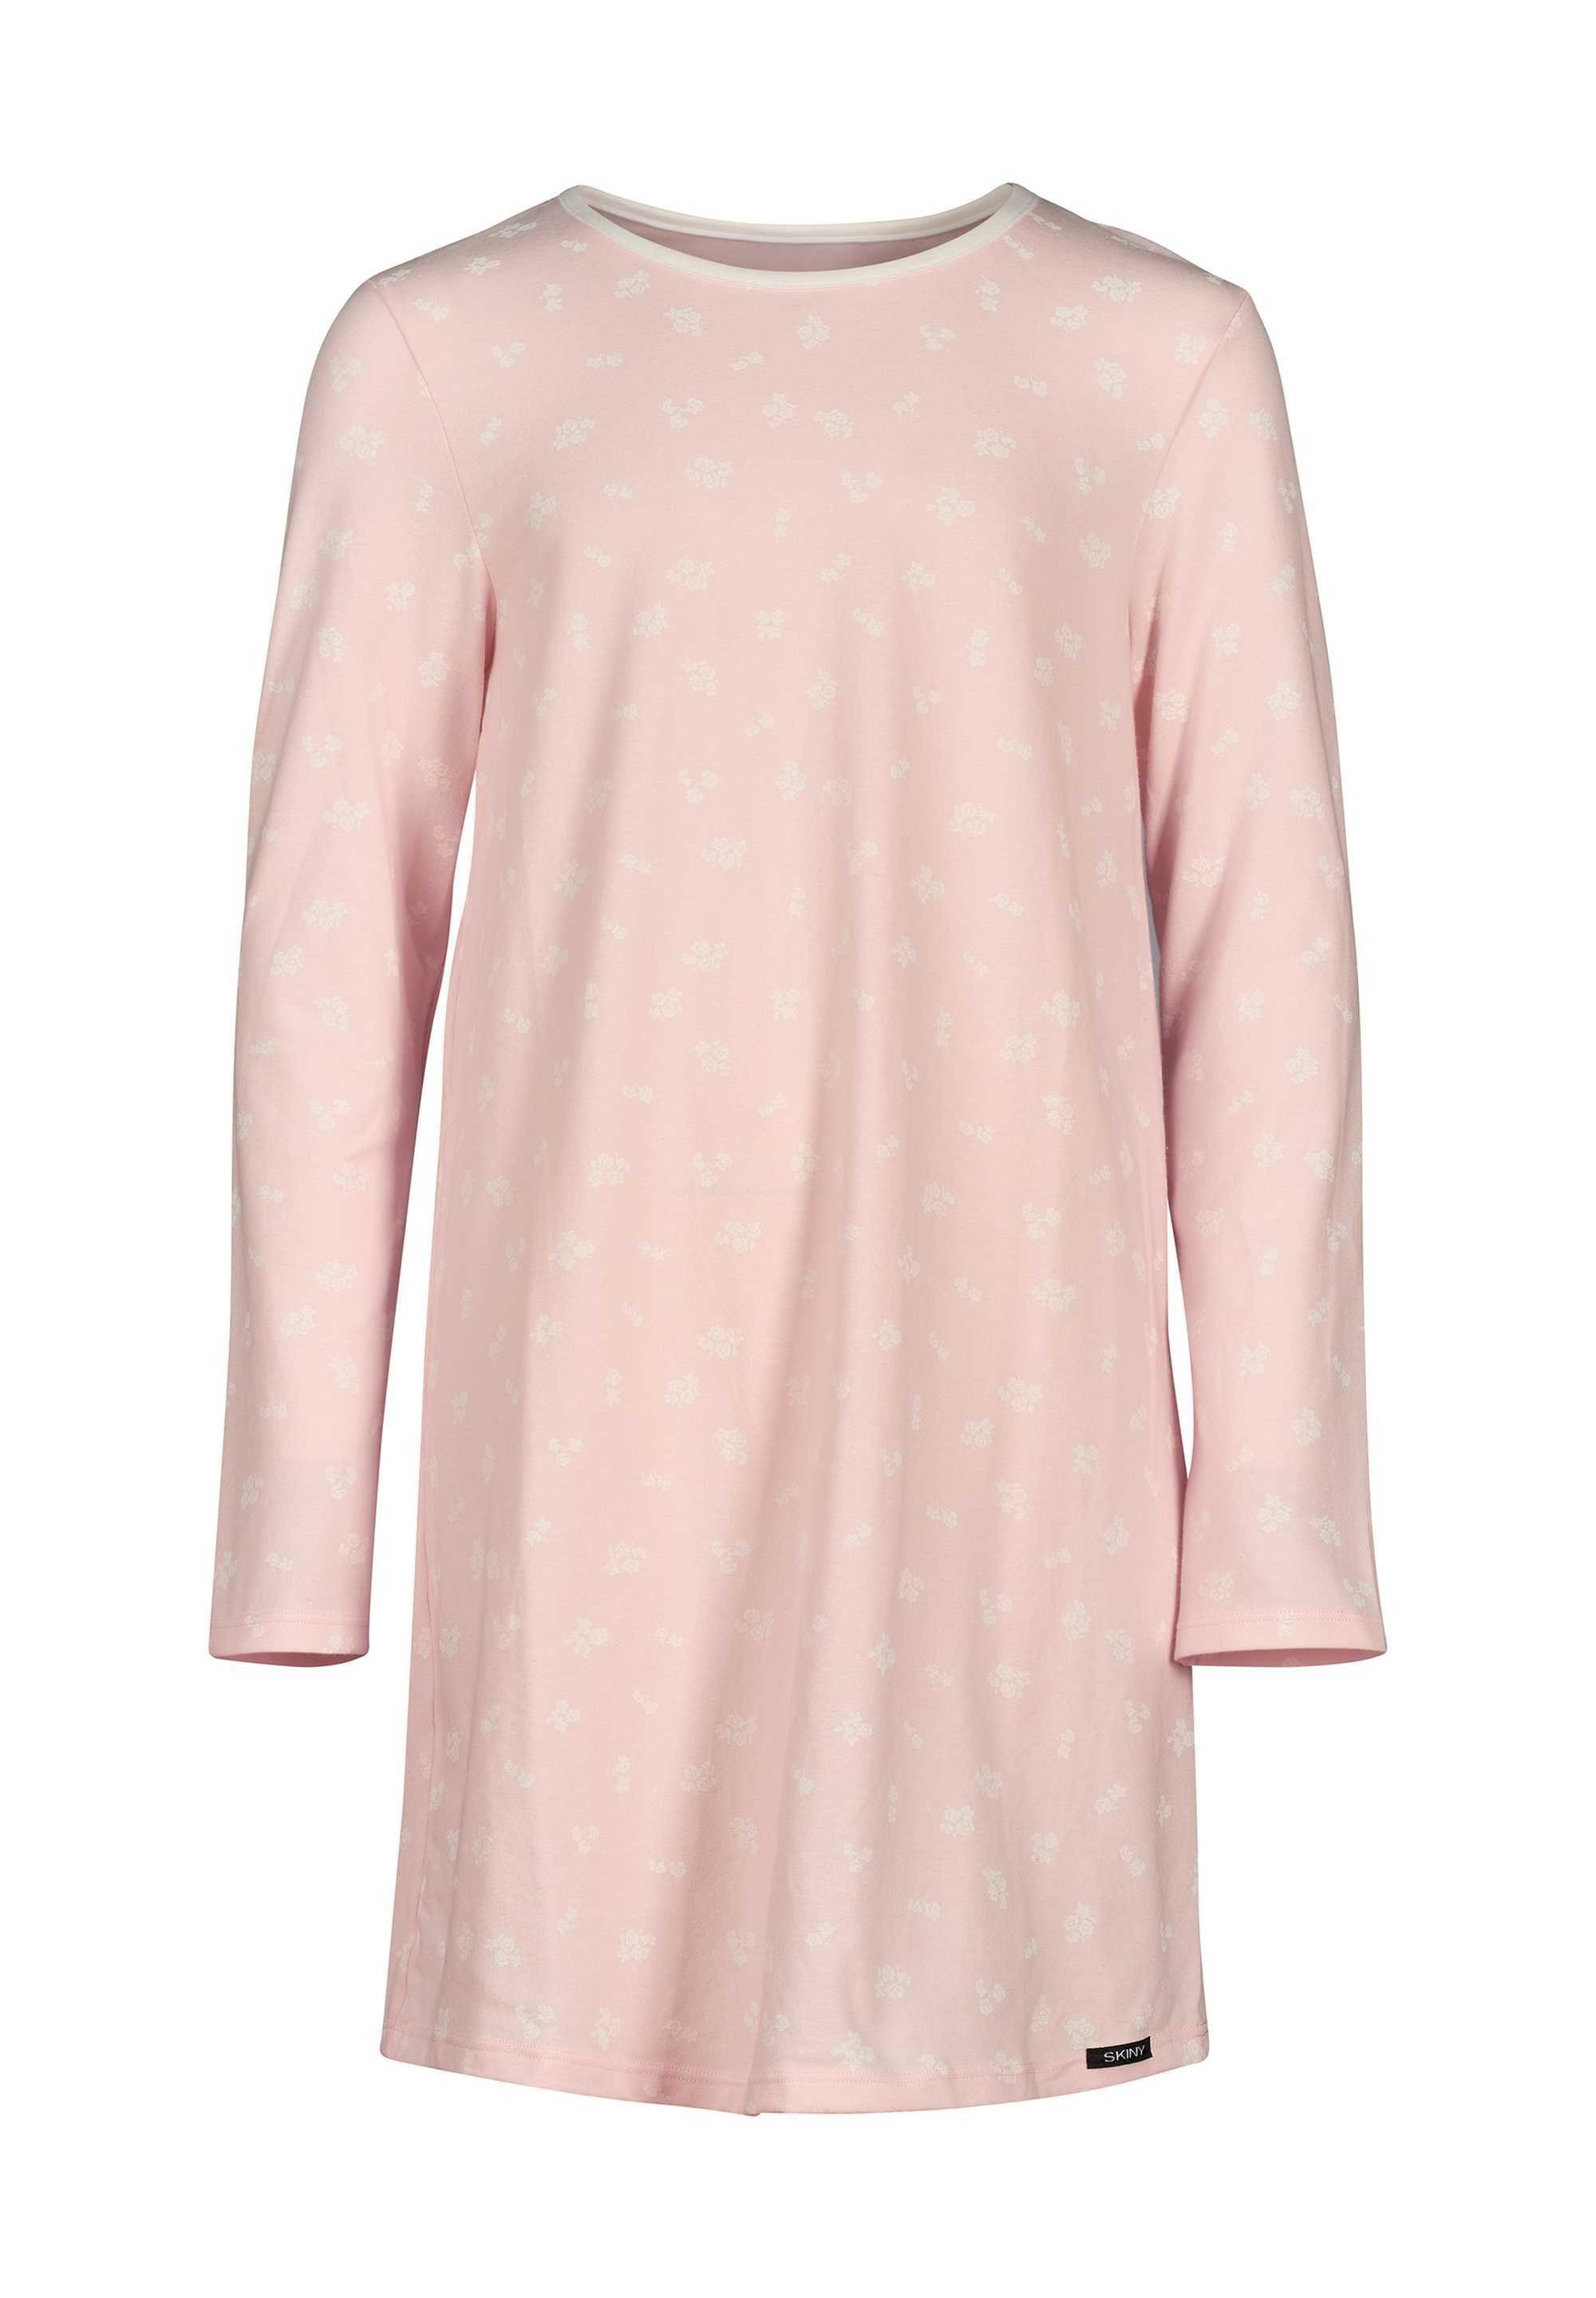 Skiny Rosa Pyjama Nachthemd Langarm, - Mädchen Sleepshirt, Kinder